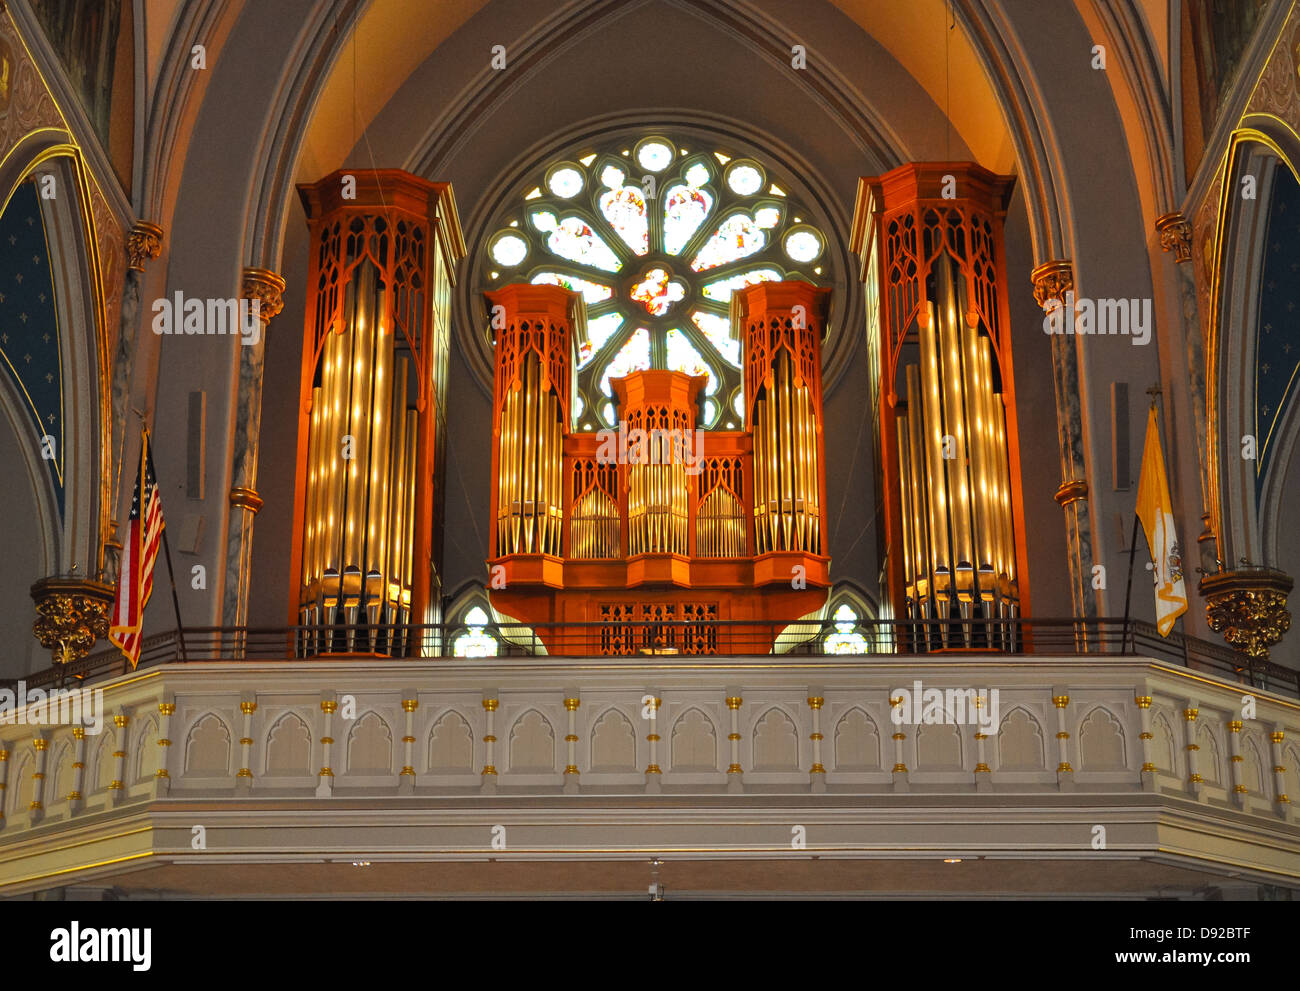 Bild einer Kirchenorgel vor einem ornamentalen Fenster Stockfoto